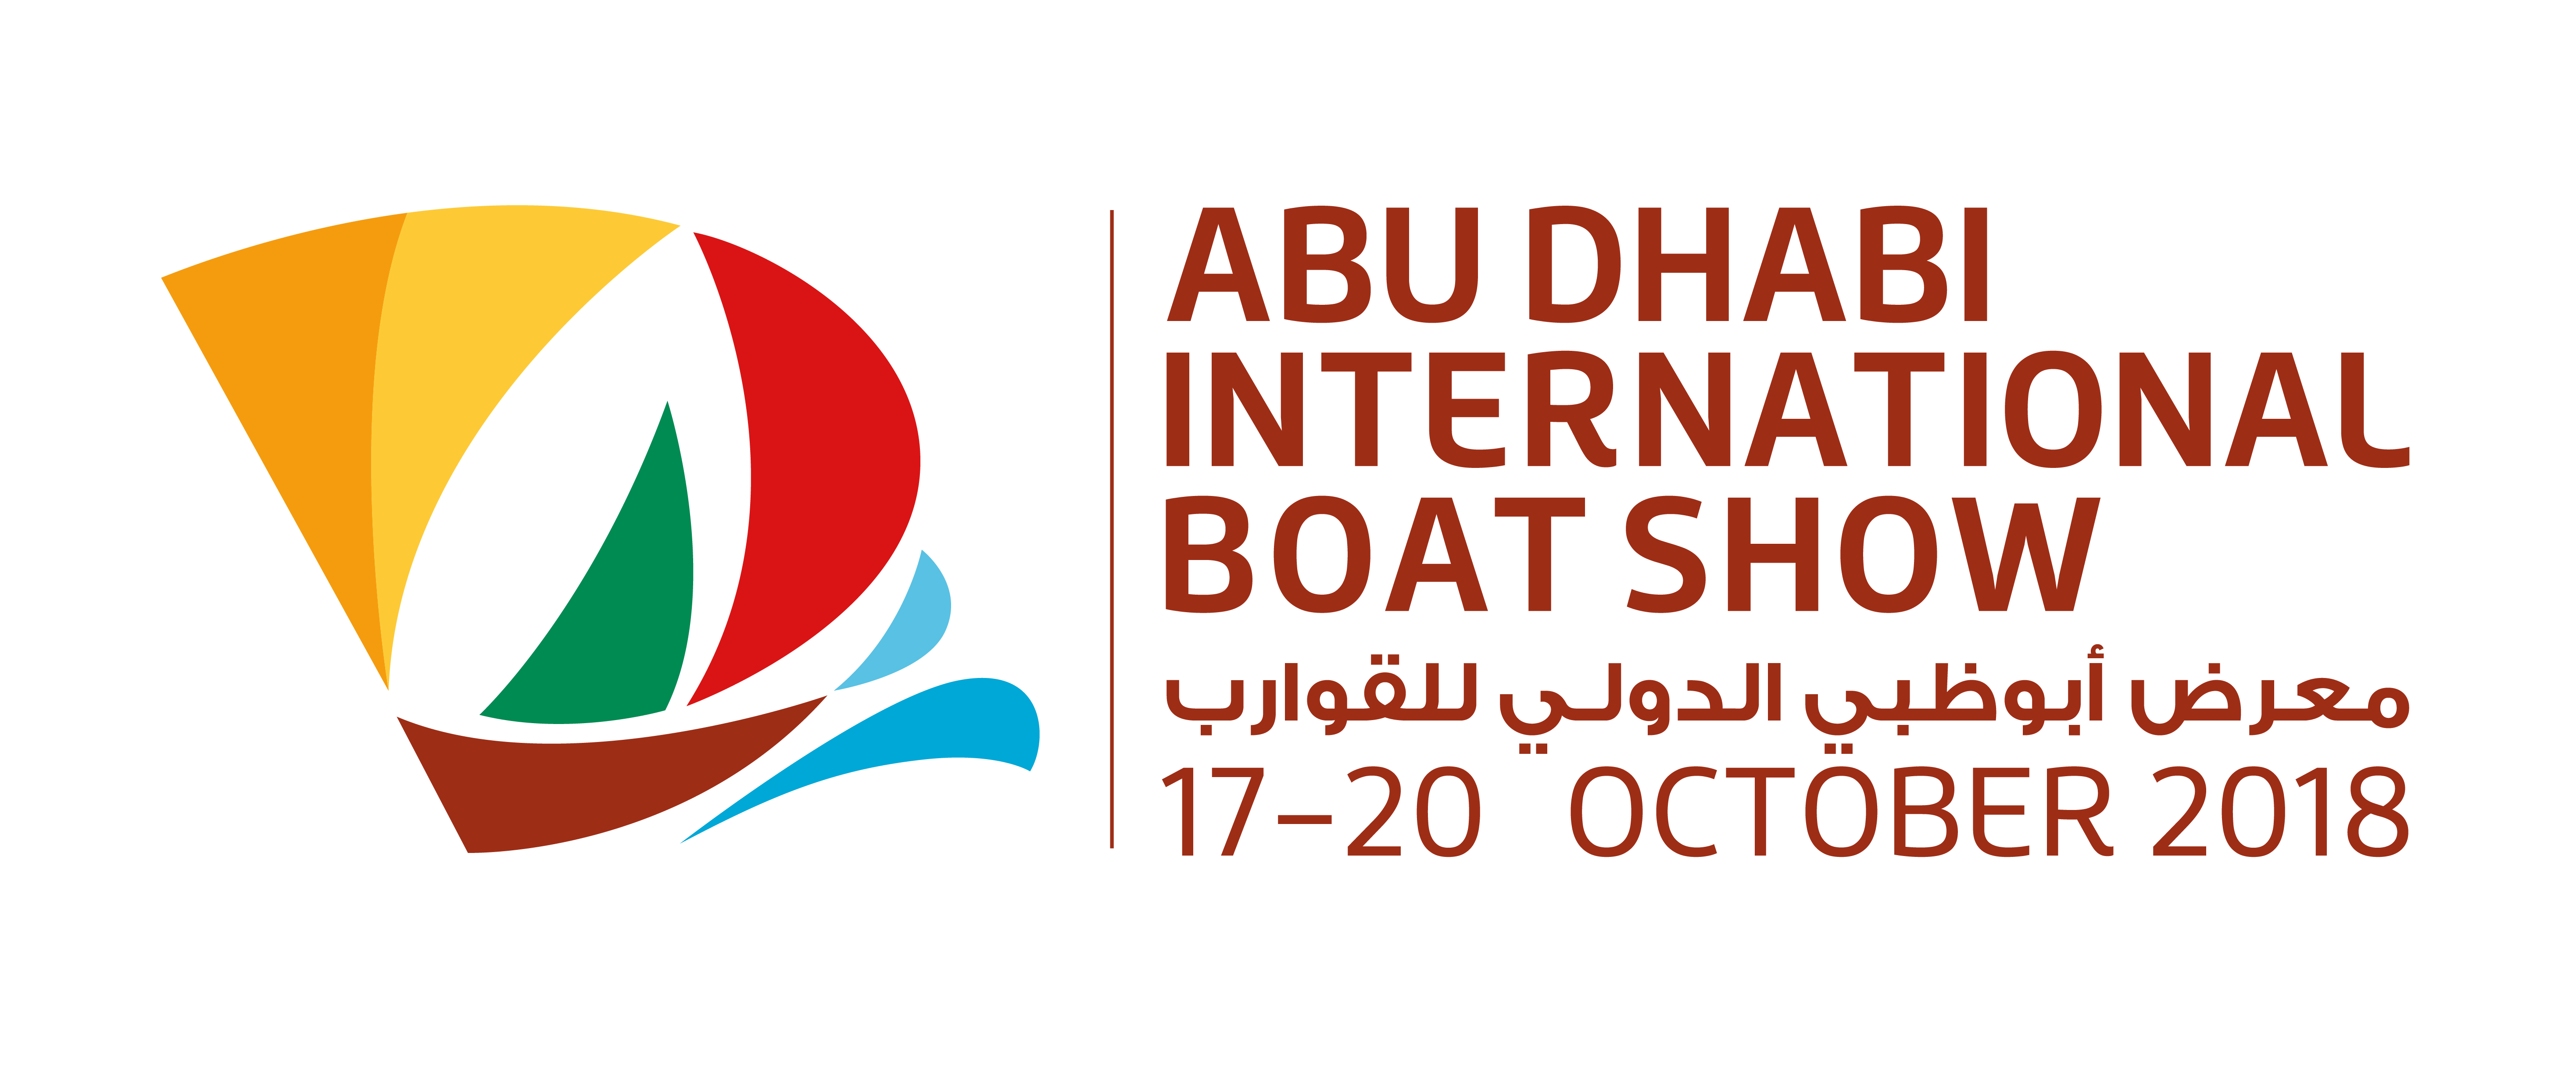 Abu Dhabi International Boat Show Marine community blog Exalto Emirates